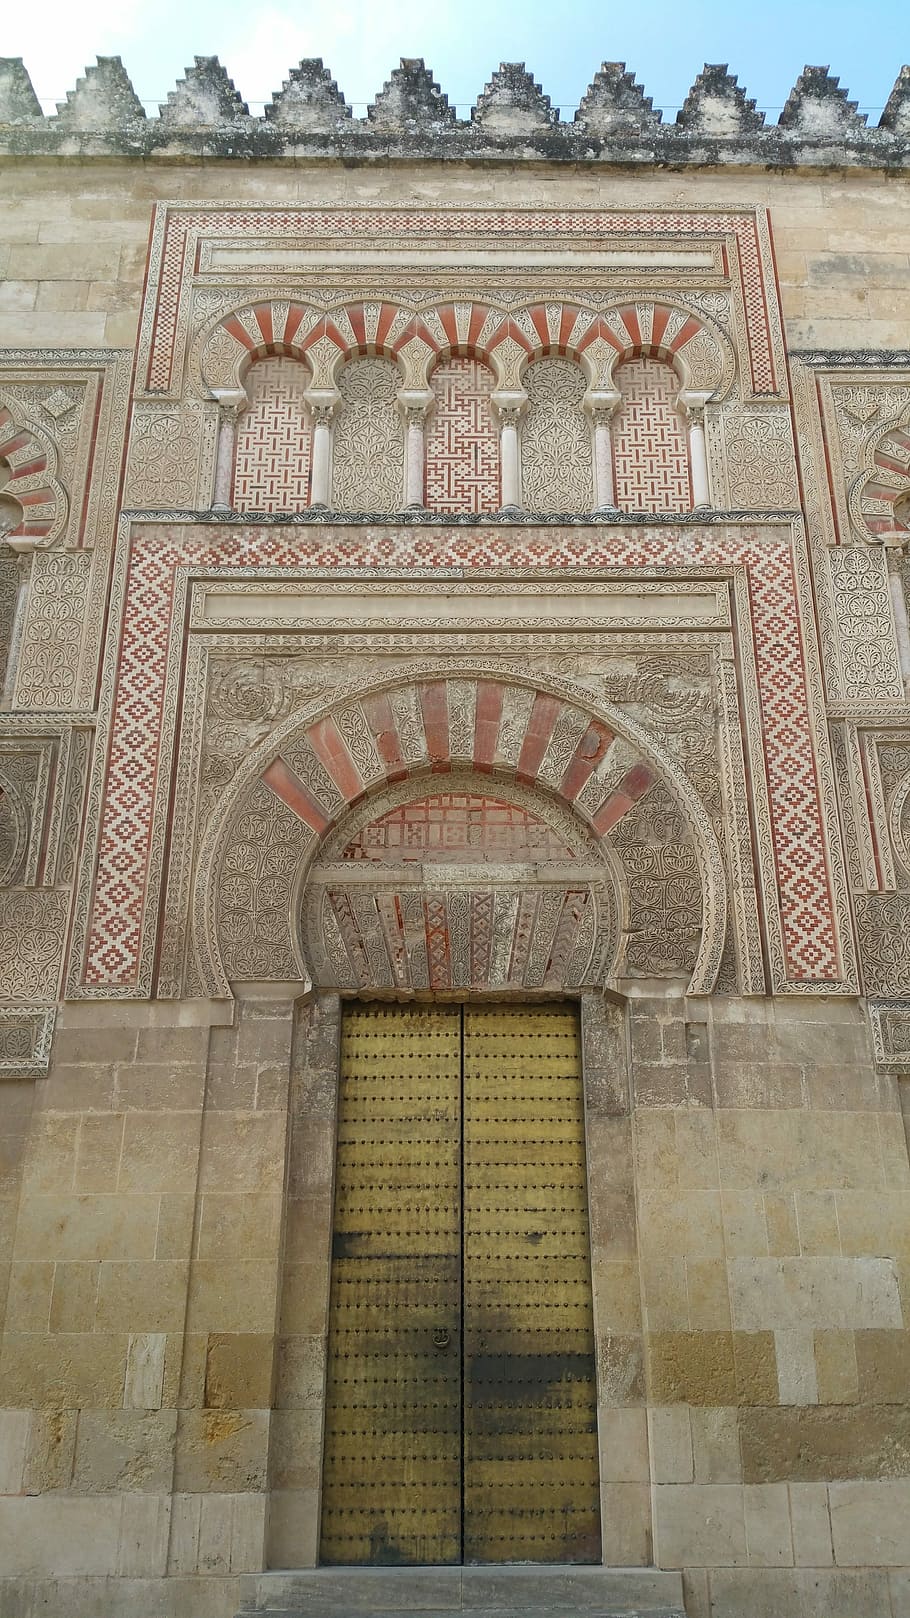 Mesquita – Catedral de Córdoba, mesquita-catedral de córdoba, grande mesquita de córdoba, córdoba, mesquita, catedral, mezquita, mouro, marco, arco